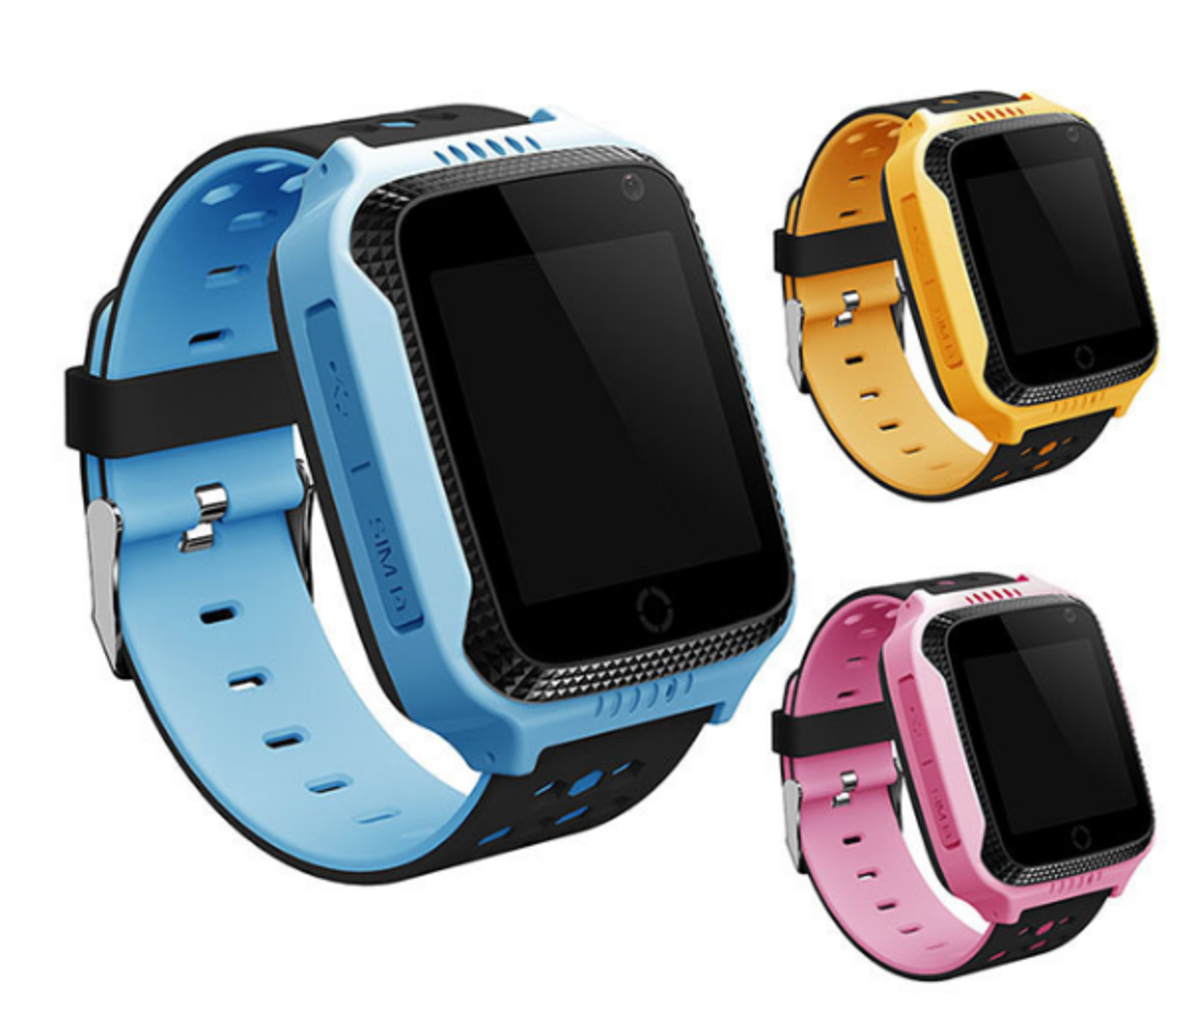 Часы телефон недорогие. Часы Smart Baby watch g100. Детские часы Smart q528/t7. Smart Baby watch g100 (Blue). Wonlex gw500s.